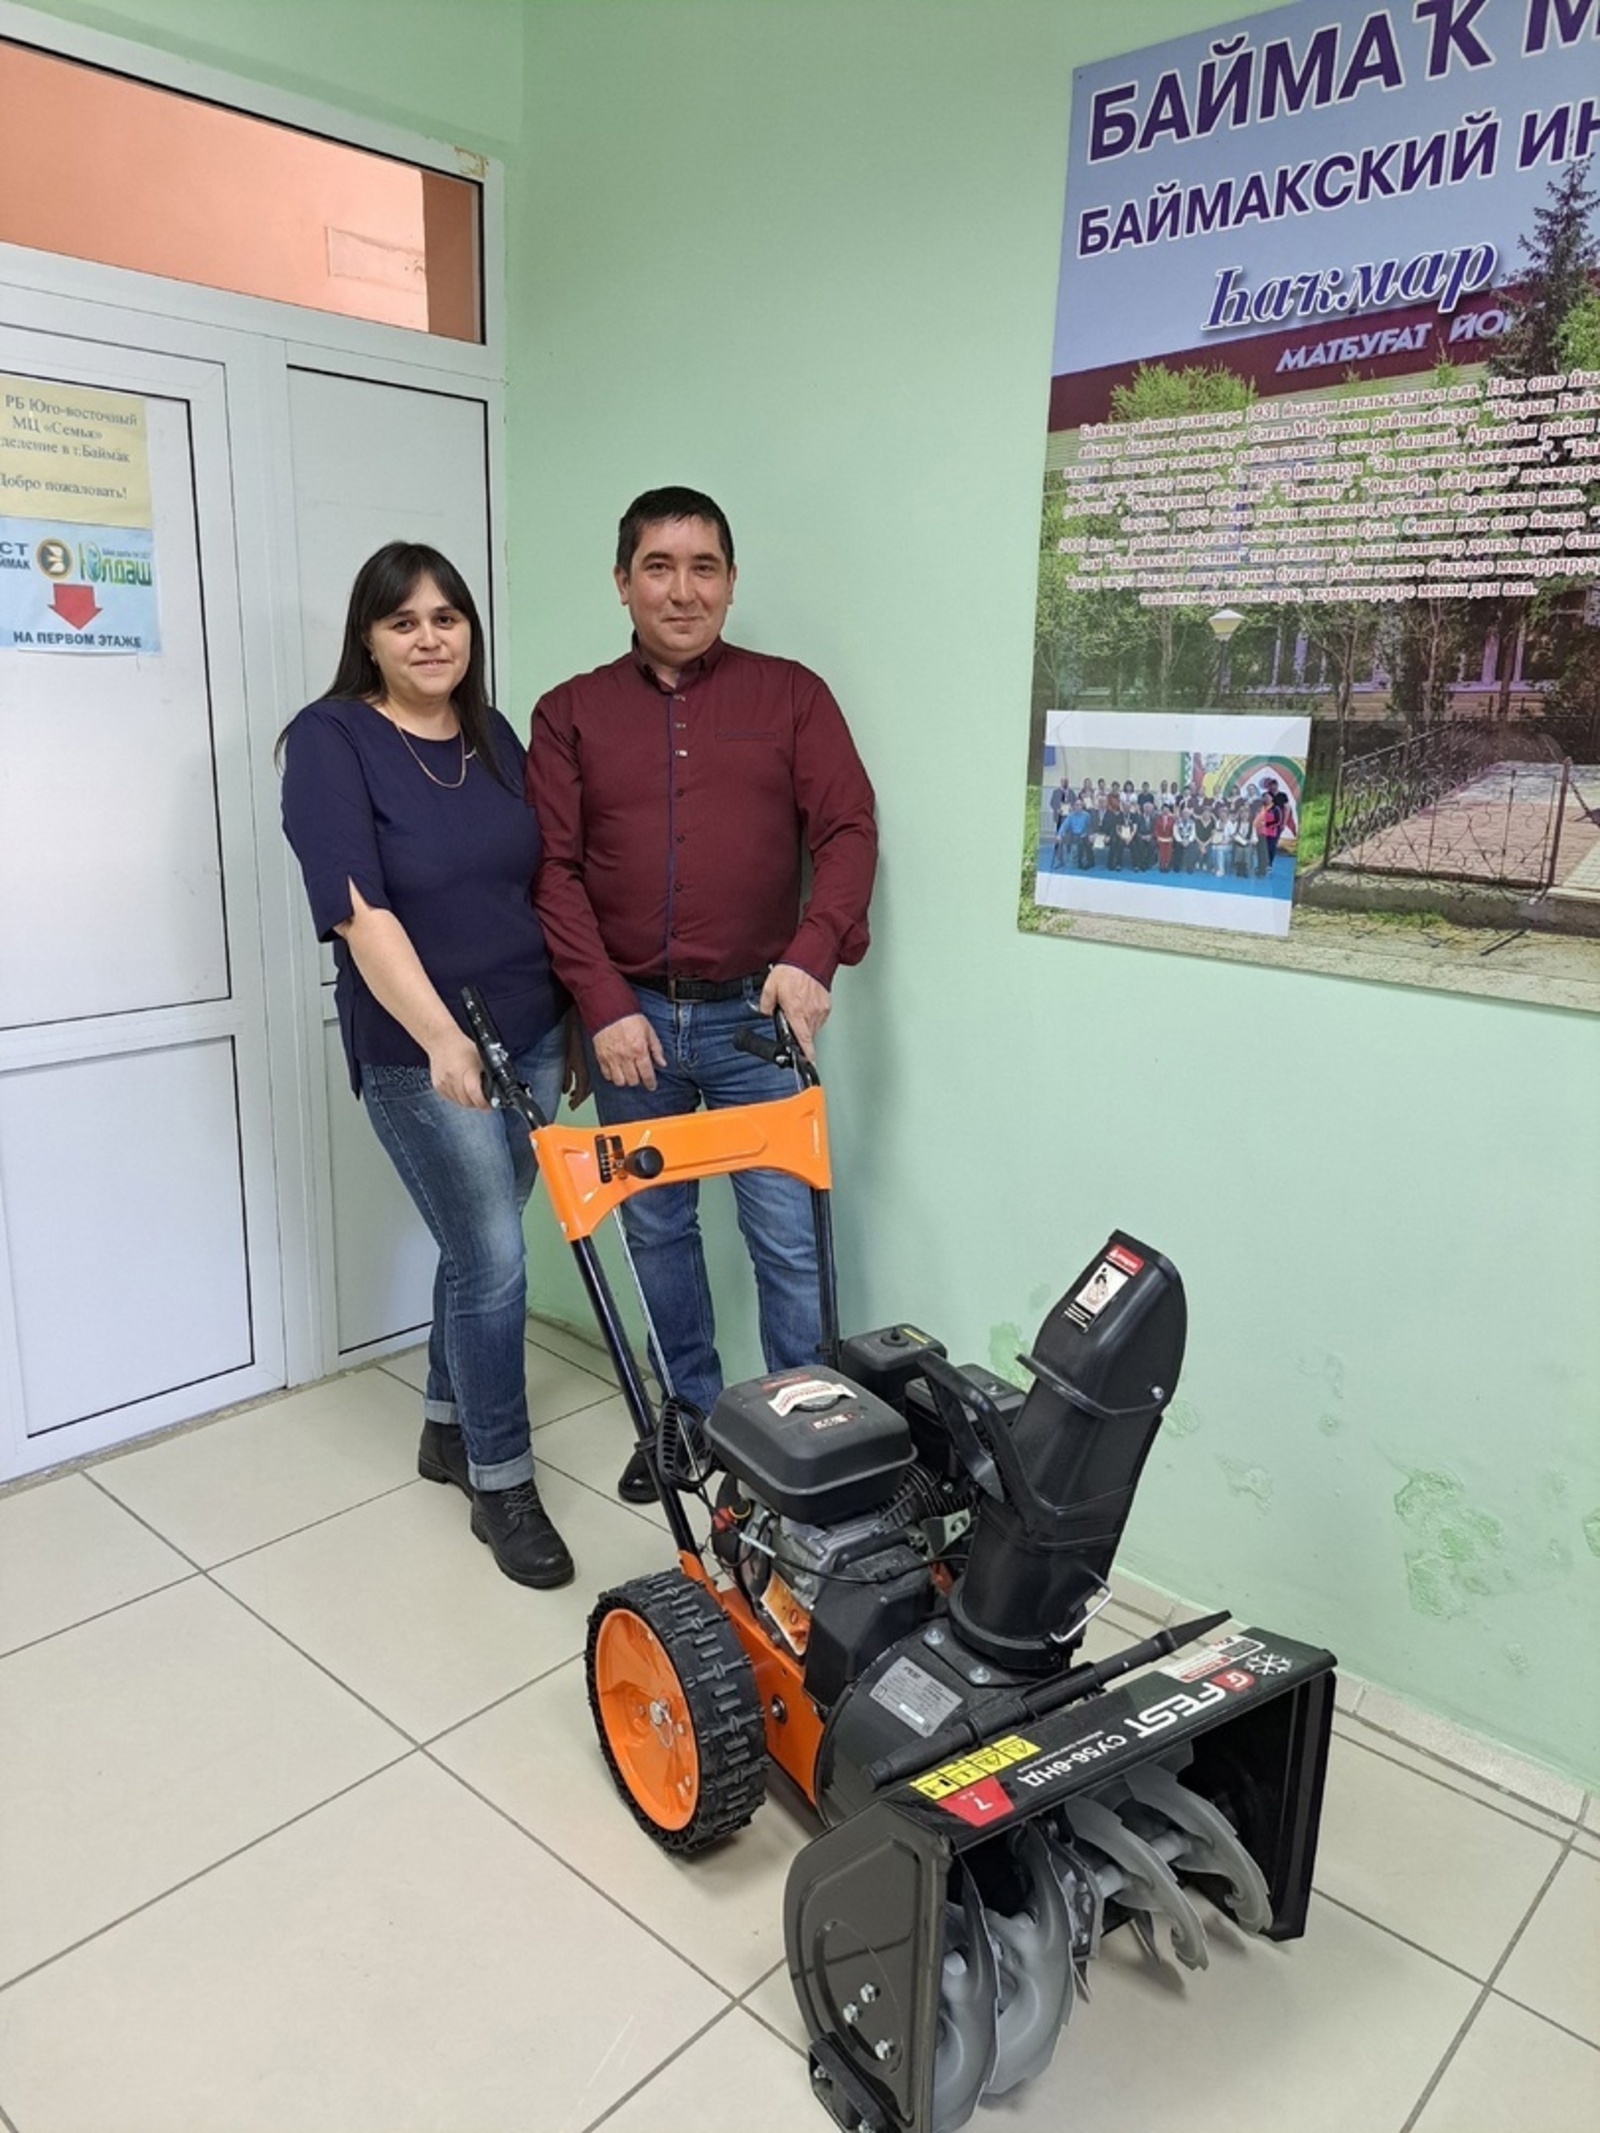 Семья из Башкирии подписалась на газеты и выиграла снегоуборочную машину